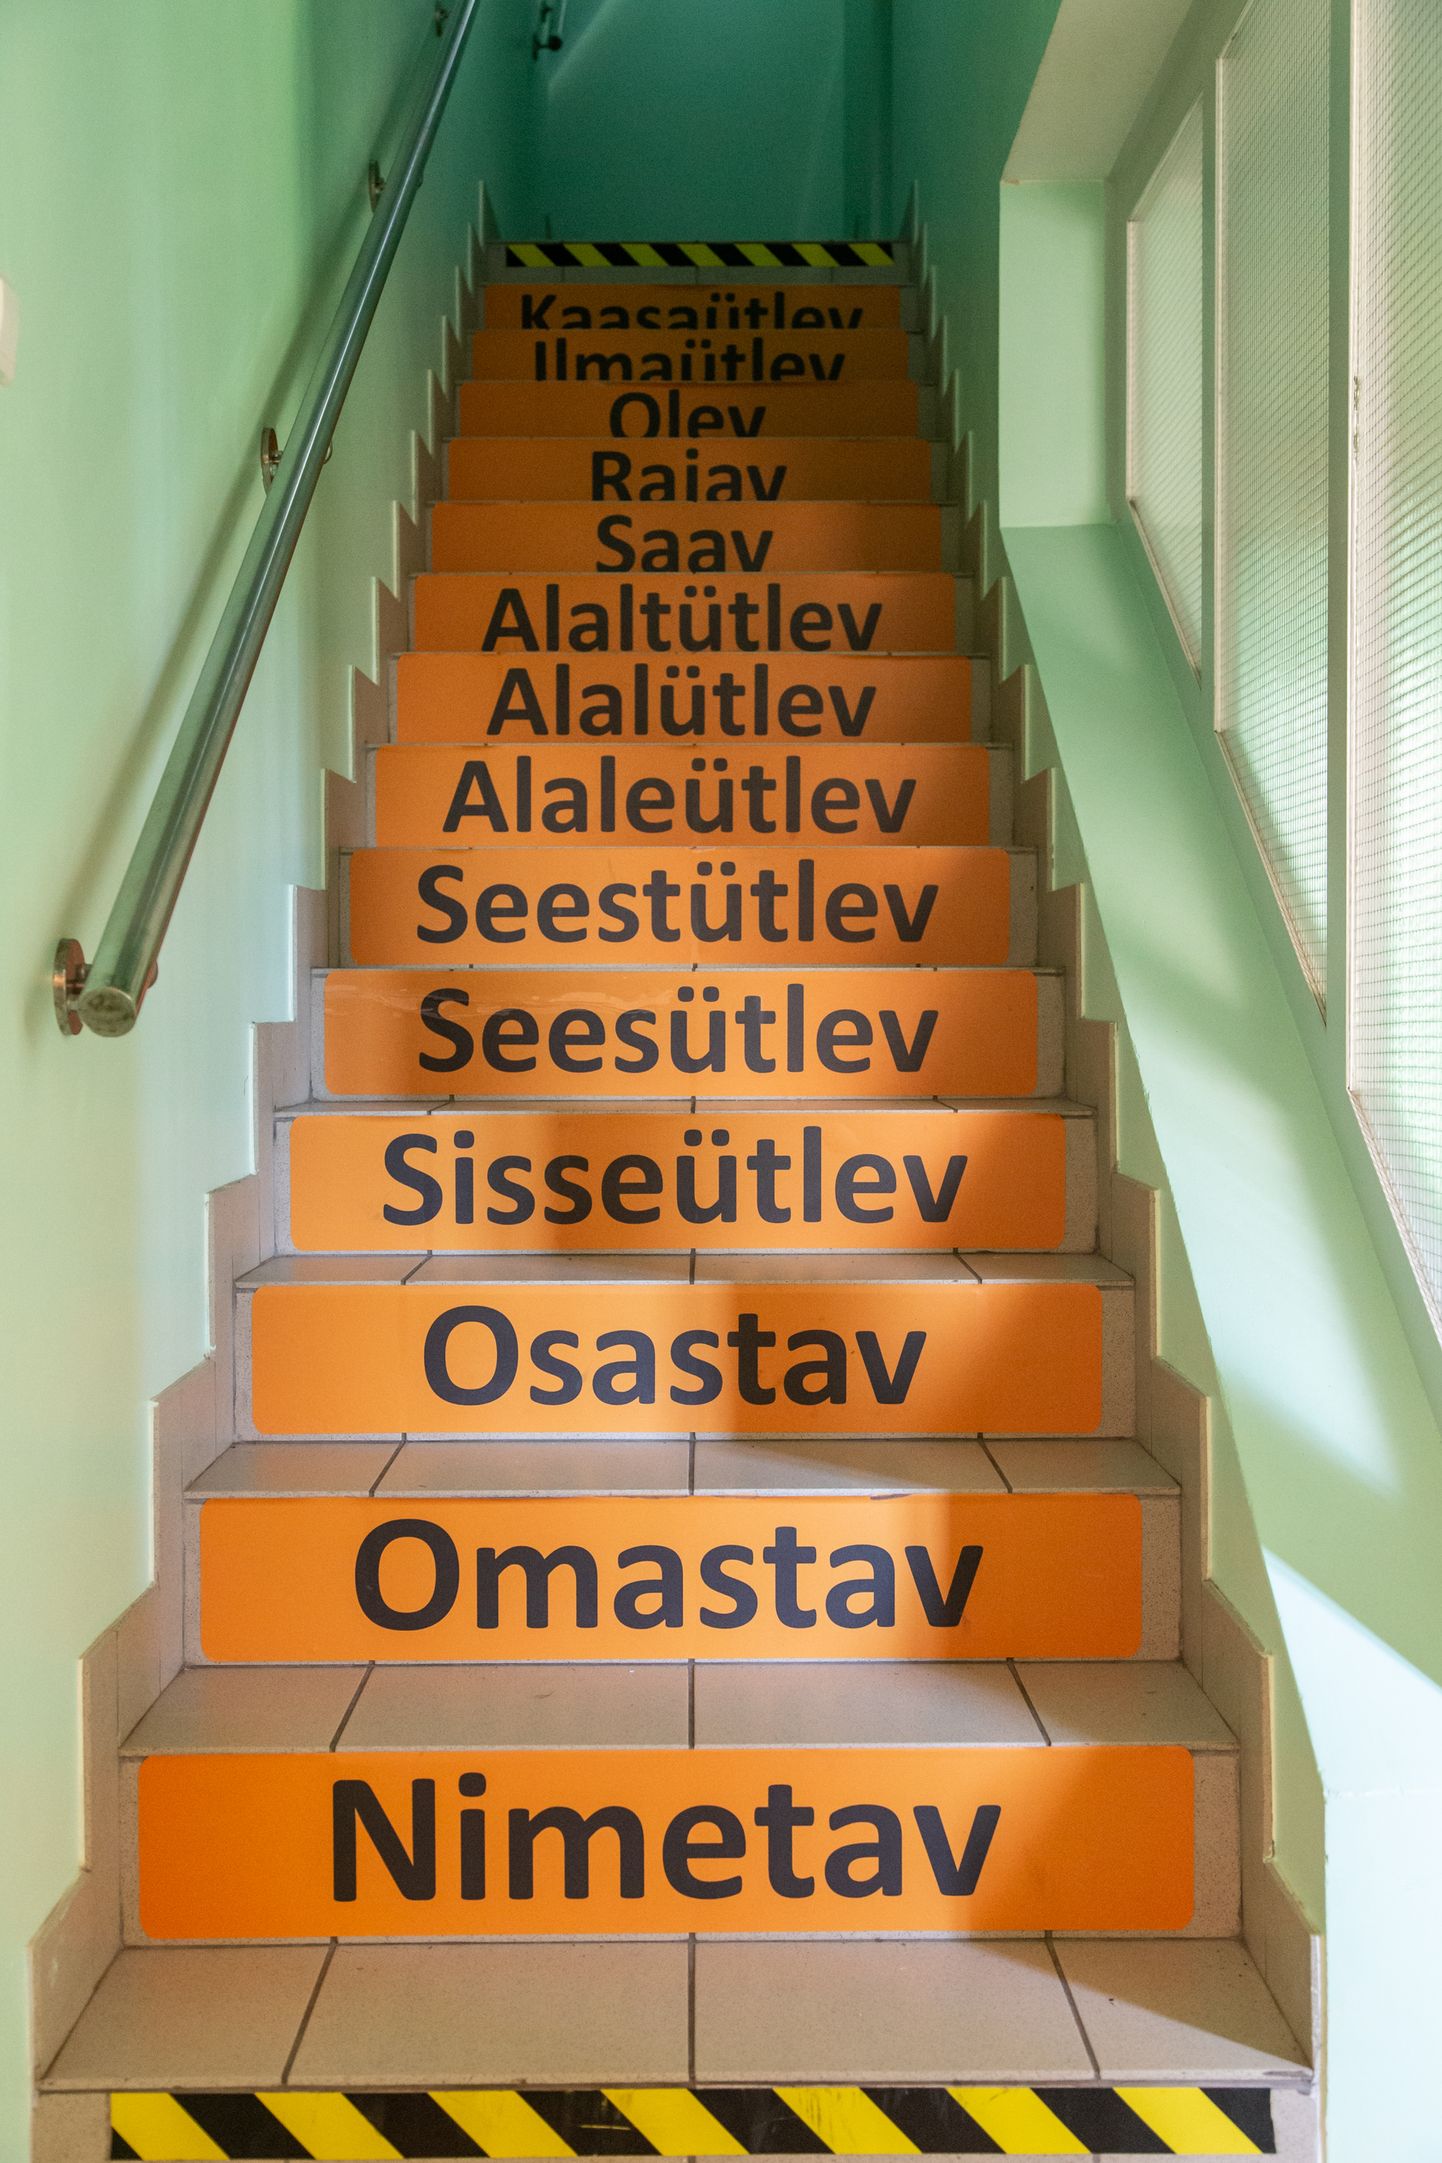 Поддерживающая обучение эстонскому языку лестница в Иллукаской школе. Снимок иллюстративный.